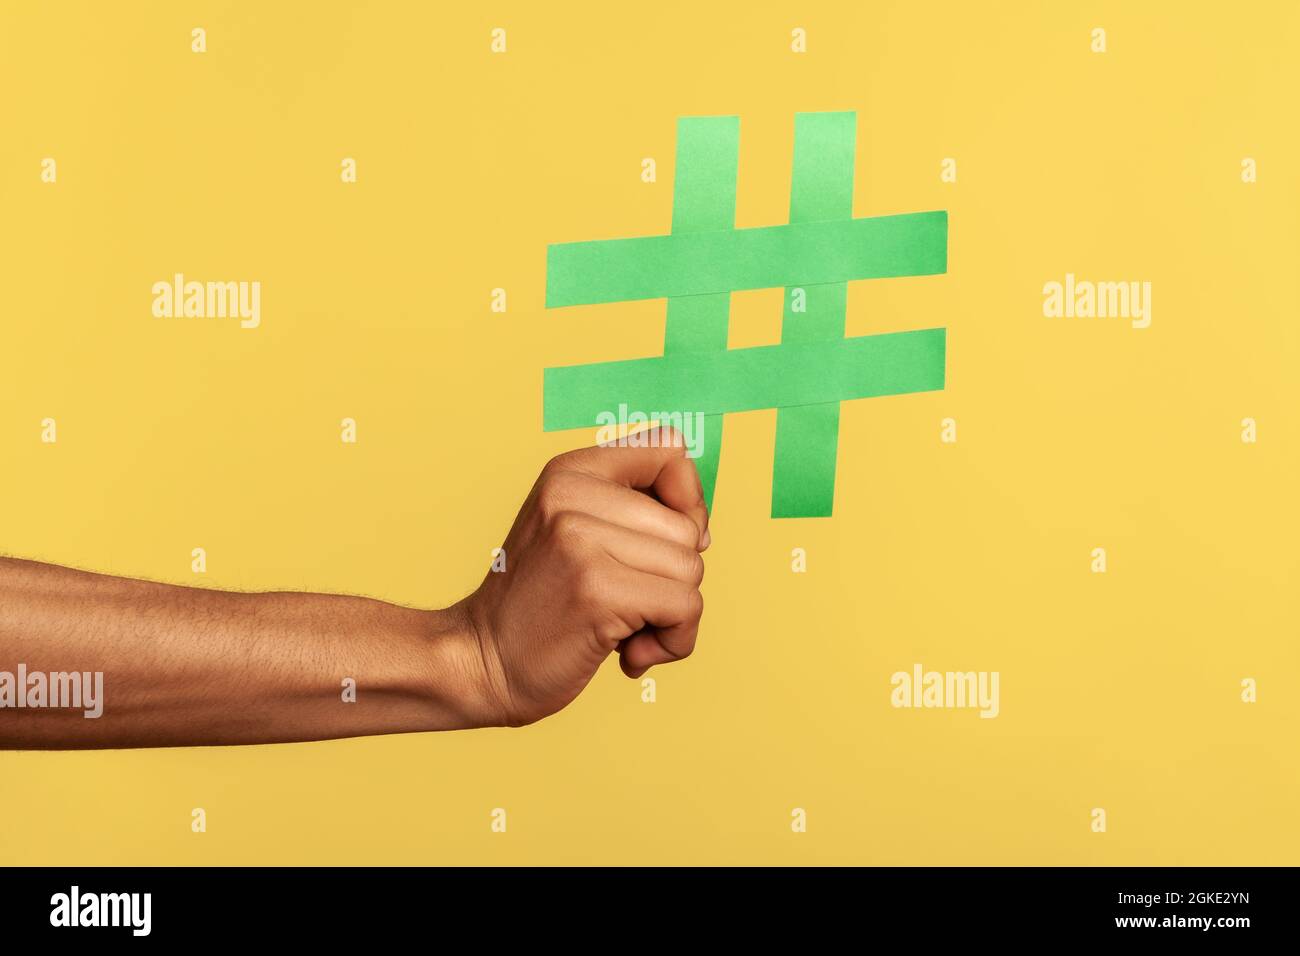 Social-Media-Konzept. Nahaufnahme von menschlicher Hand, die große grüne Hashtag-Schilder zeigt, Copyspace. Innenaufnahme des Studios isoliert auf gelbem Hintergrund Stockfoto